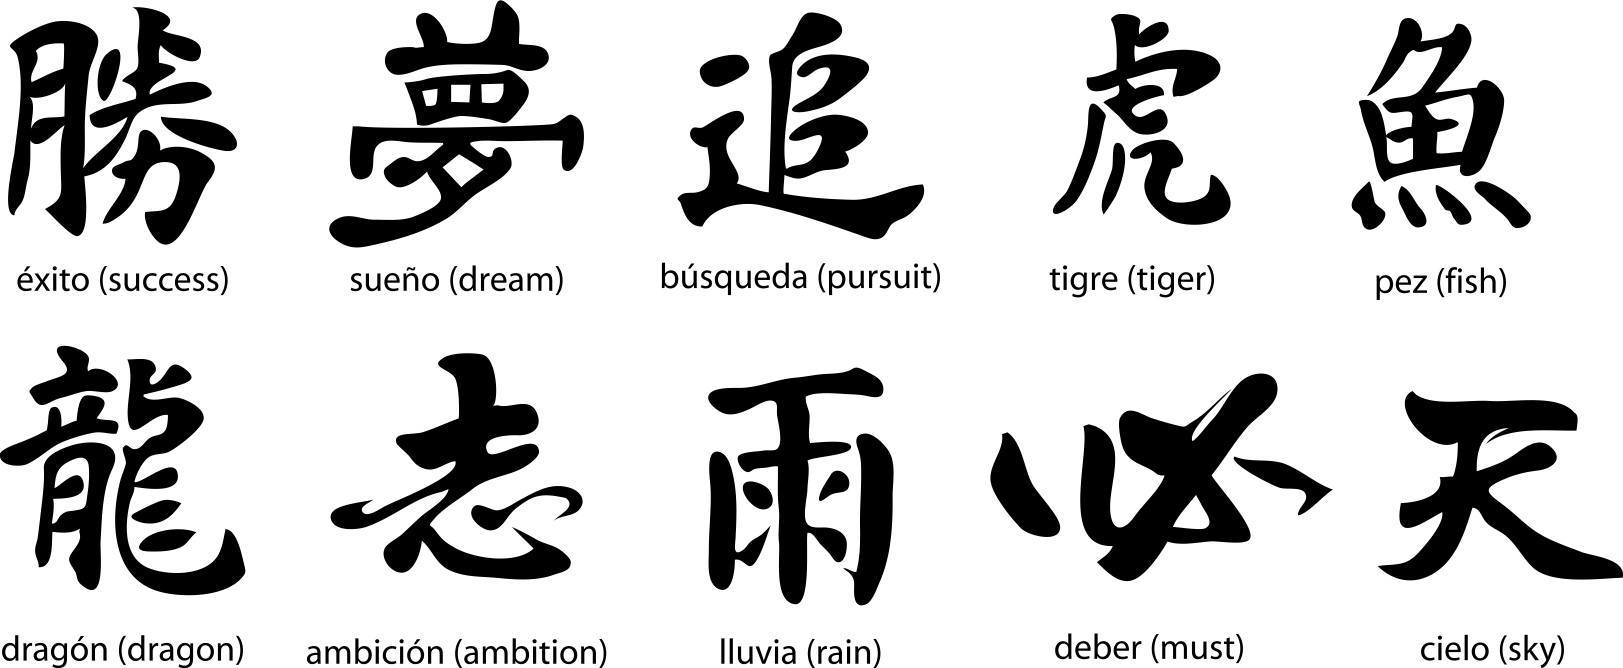 Никнеймы на японском. Японский символ вечности. Китайский иероглиф вечность. Японский иероглиф вечность. Вечность на китайском.